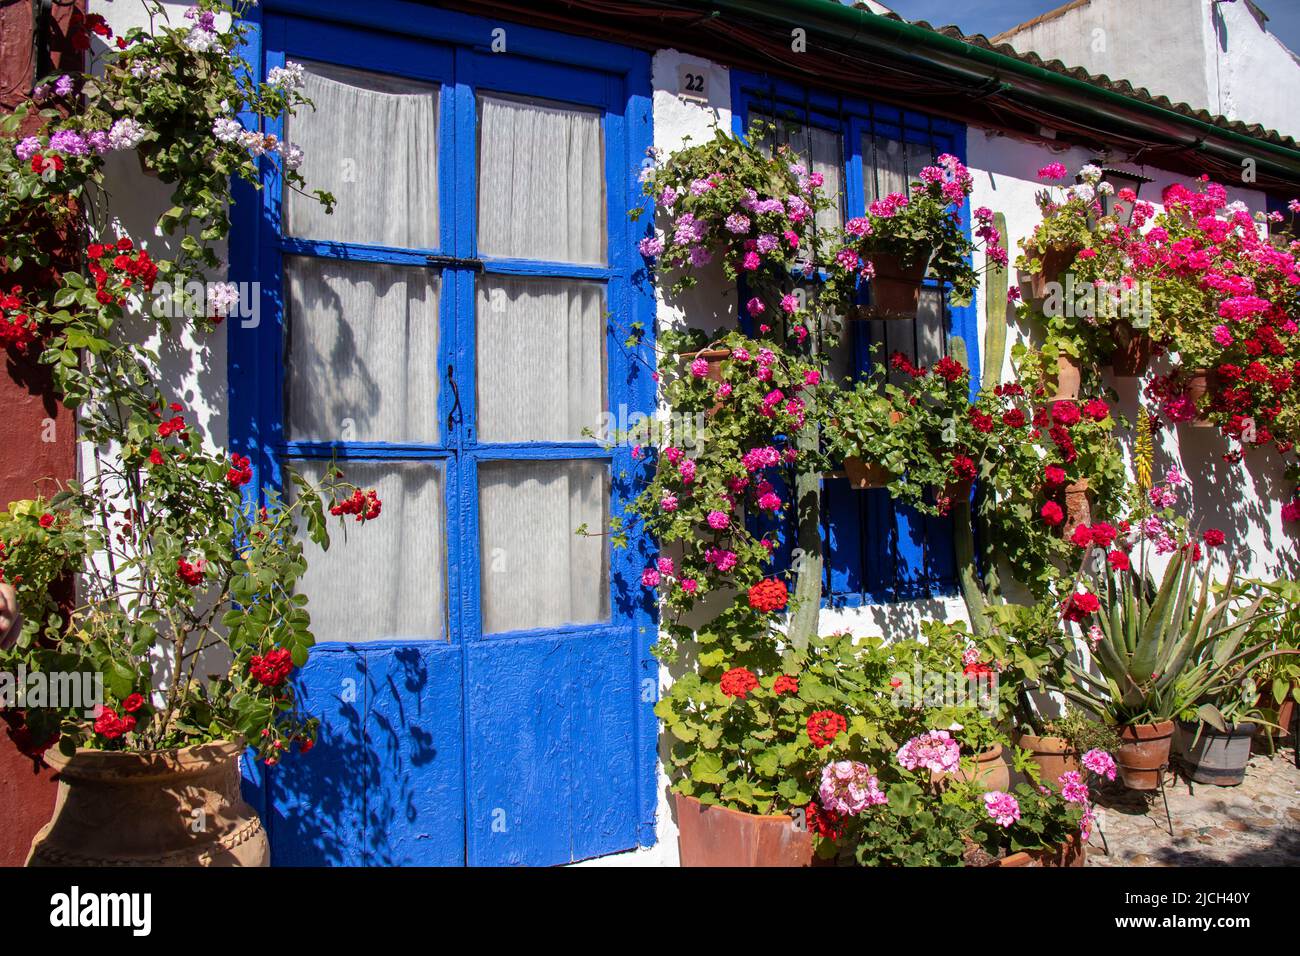 Patio lleno de flores en primavera. Paredes blancas y puertas, ventanas y macetas en color azul. Córdoba, España. Stock Photo